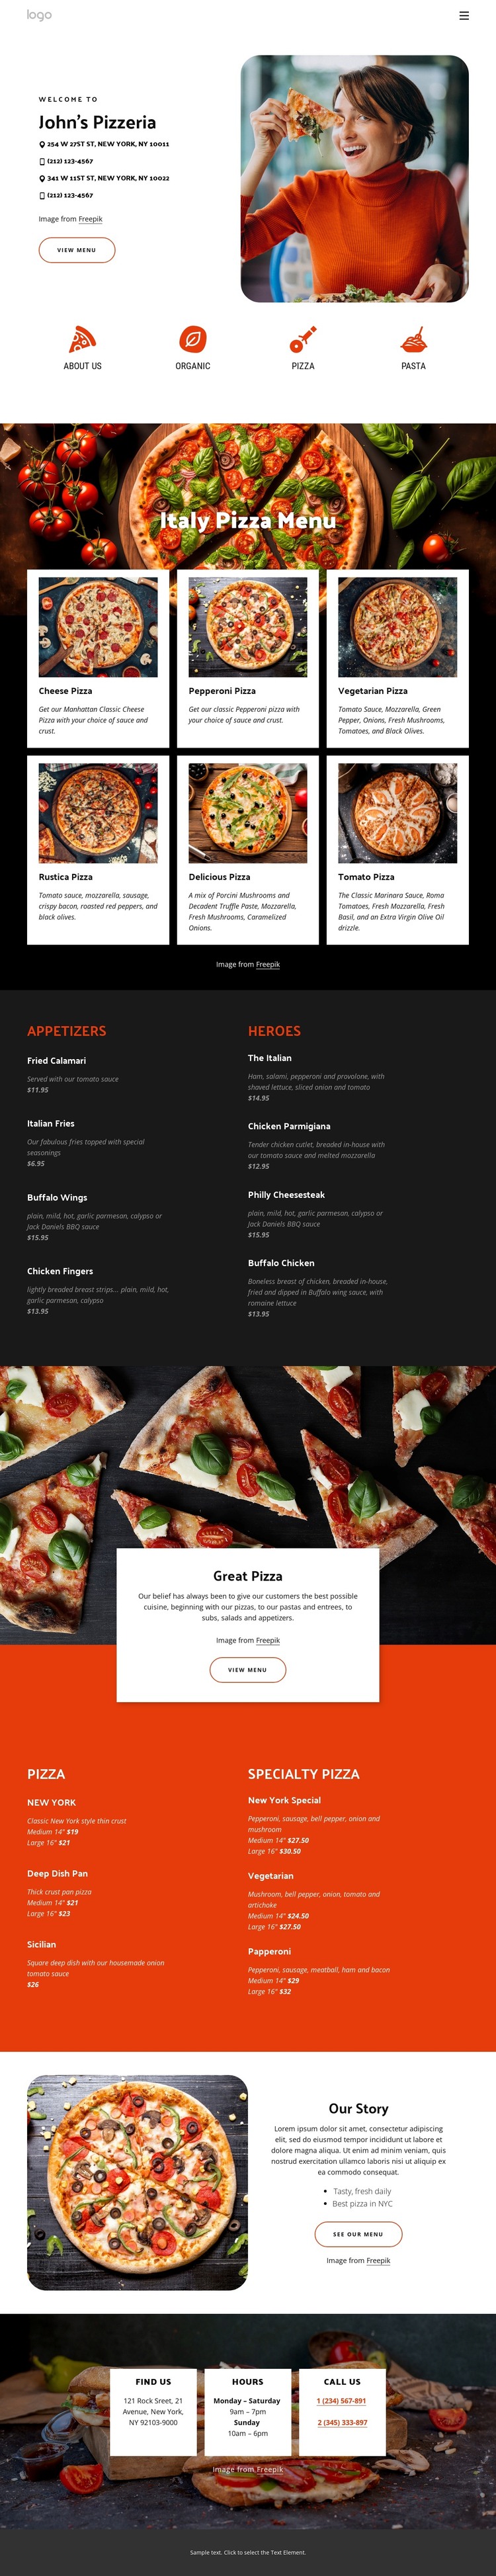 Pizzeria Web Design